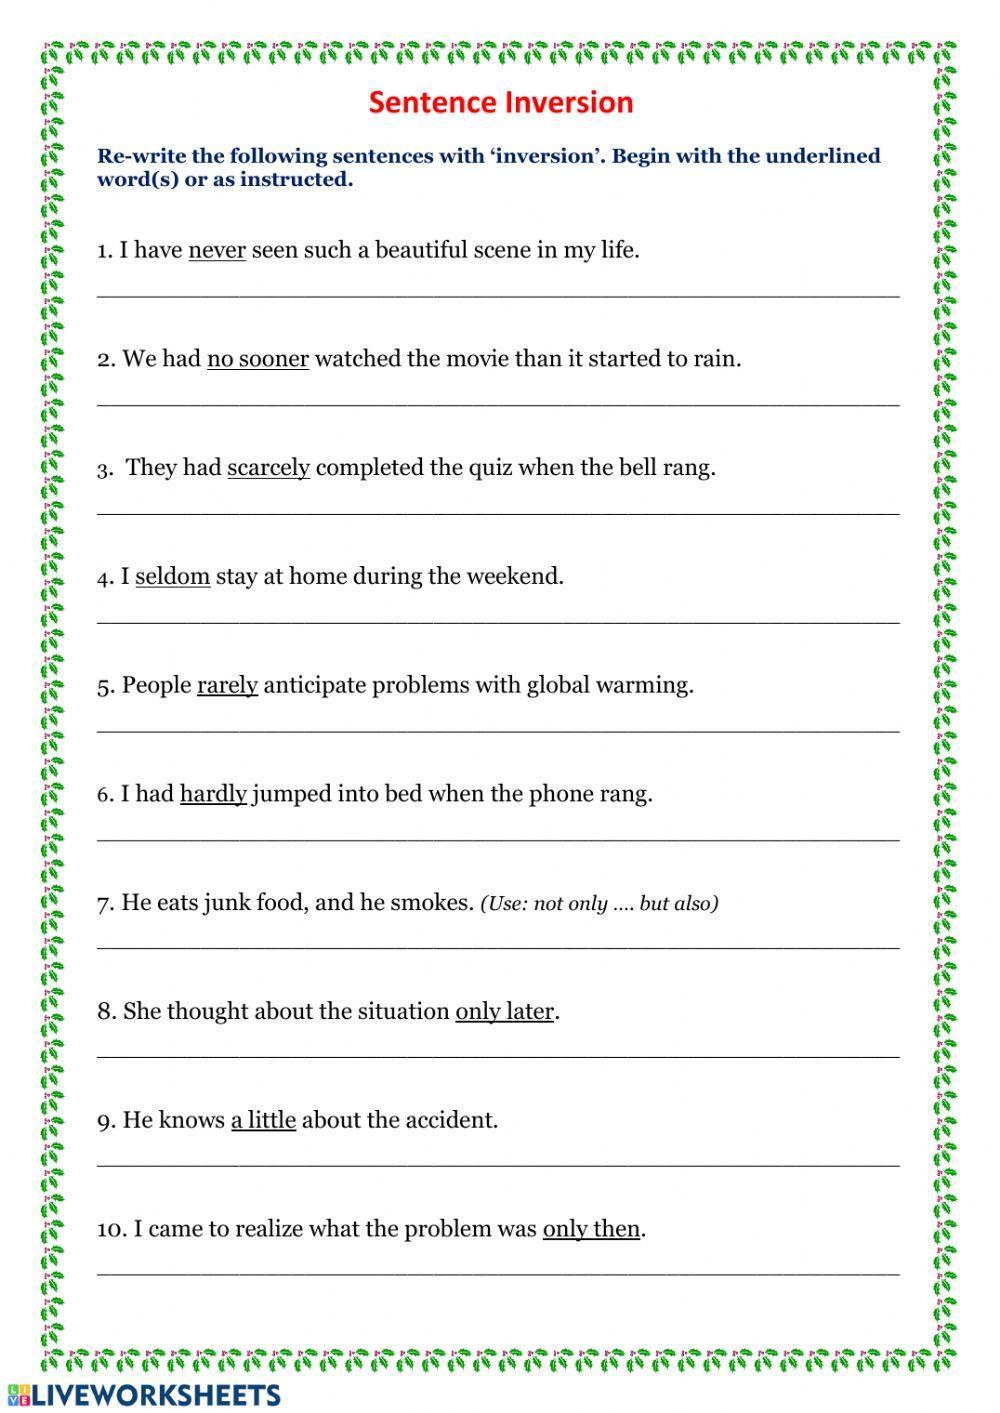 Sentence Inversion worksheet | Live Worksheets